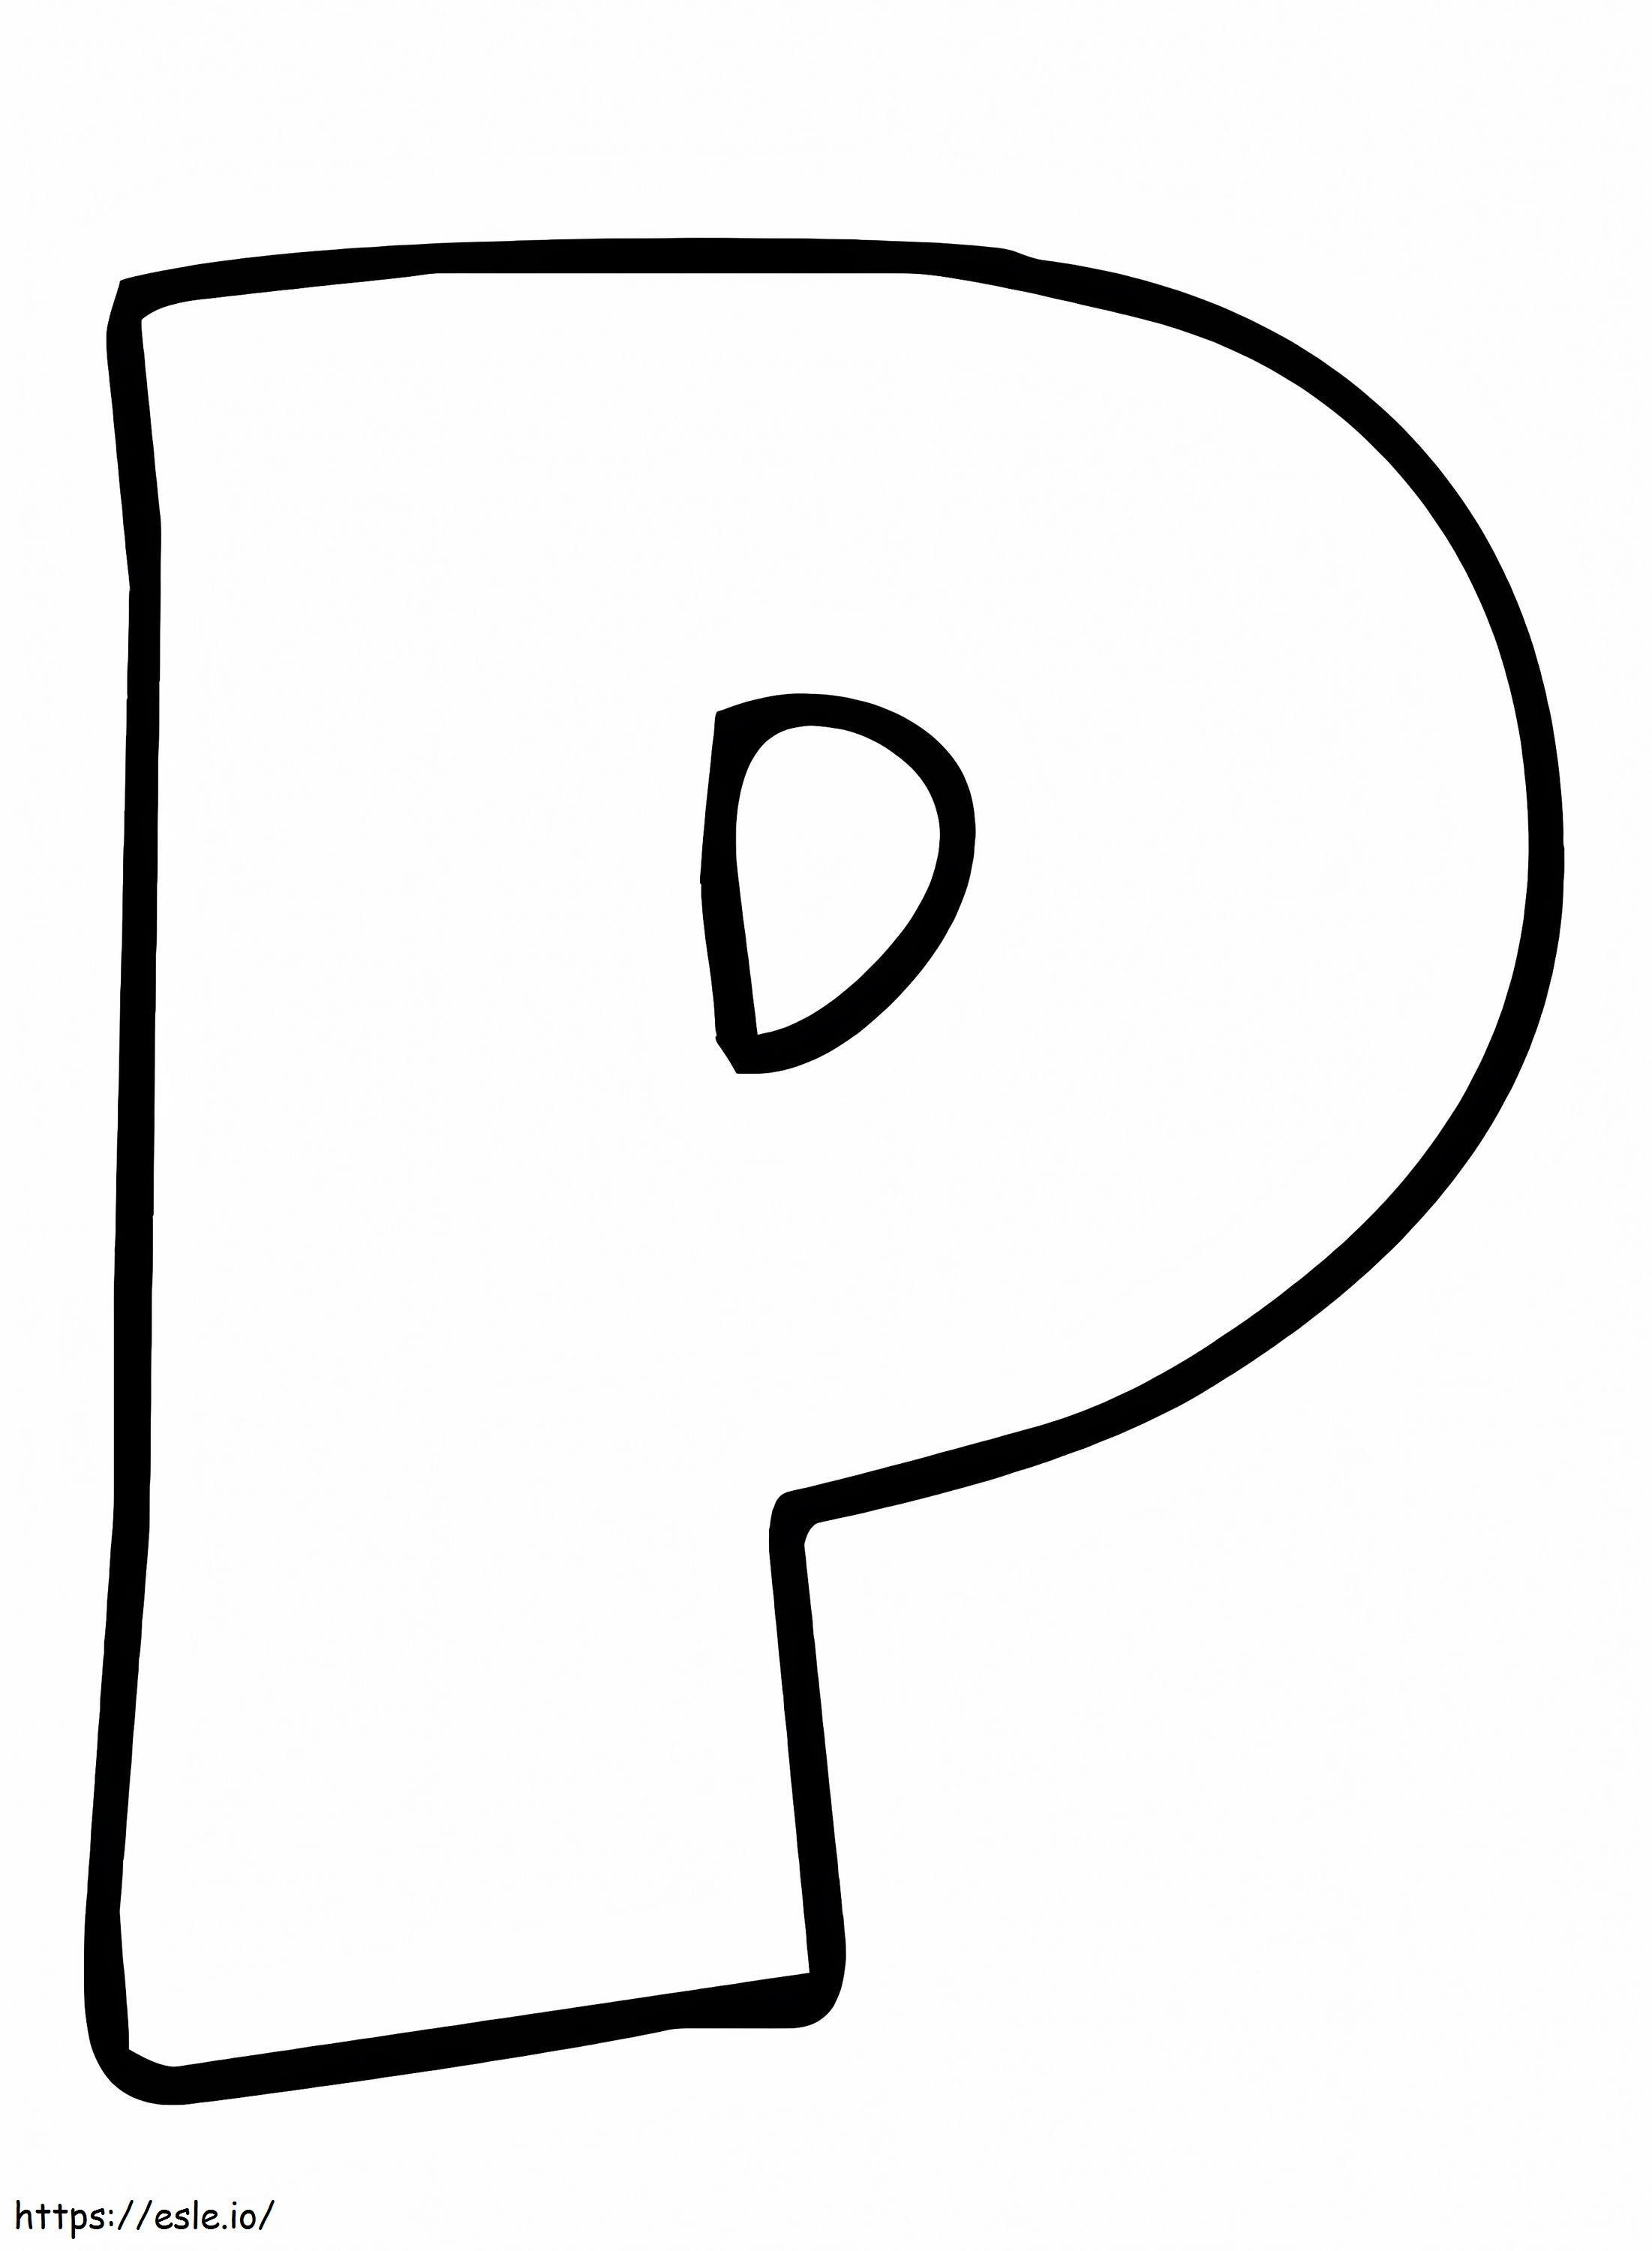 Einfacher Buchstabe P ausmalbilder